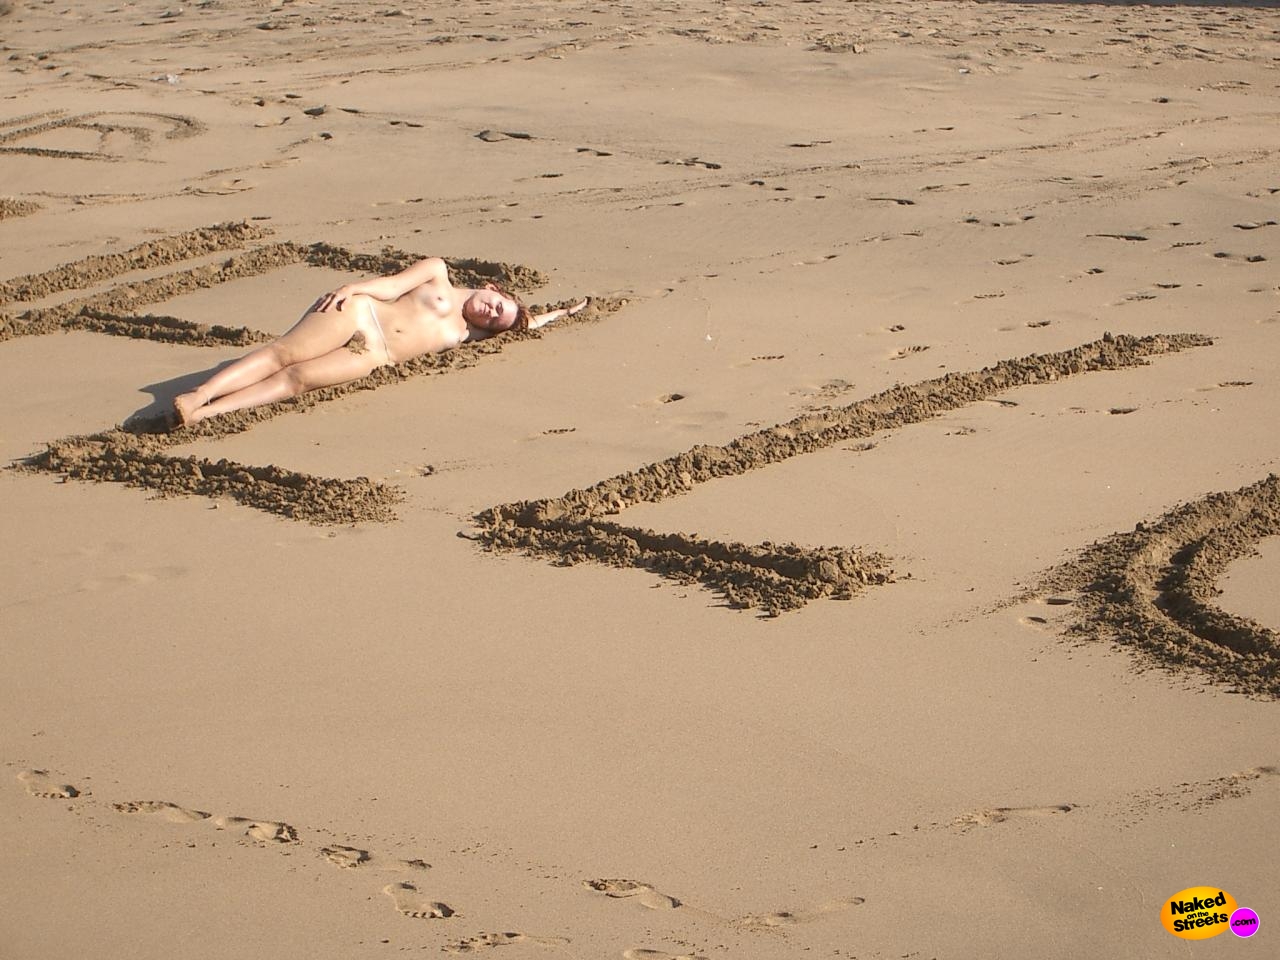 Nude beach relaxing